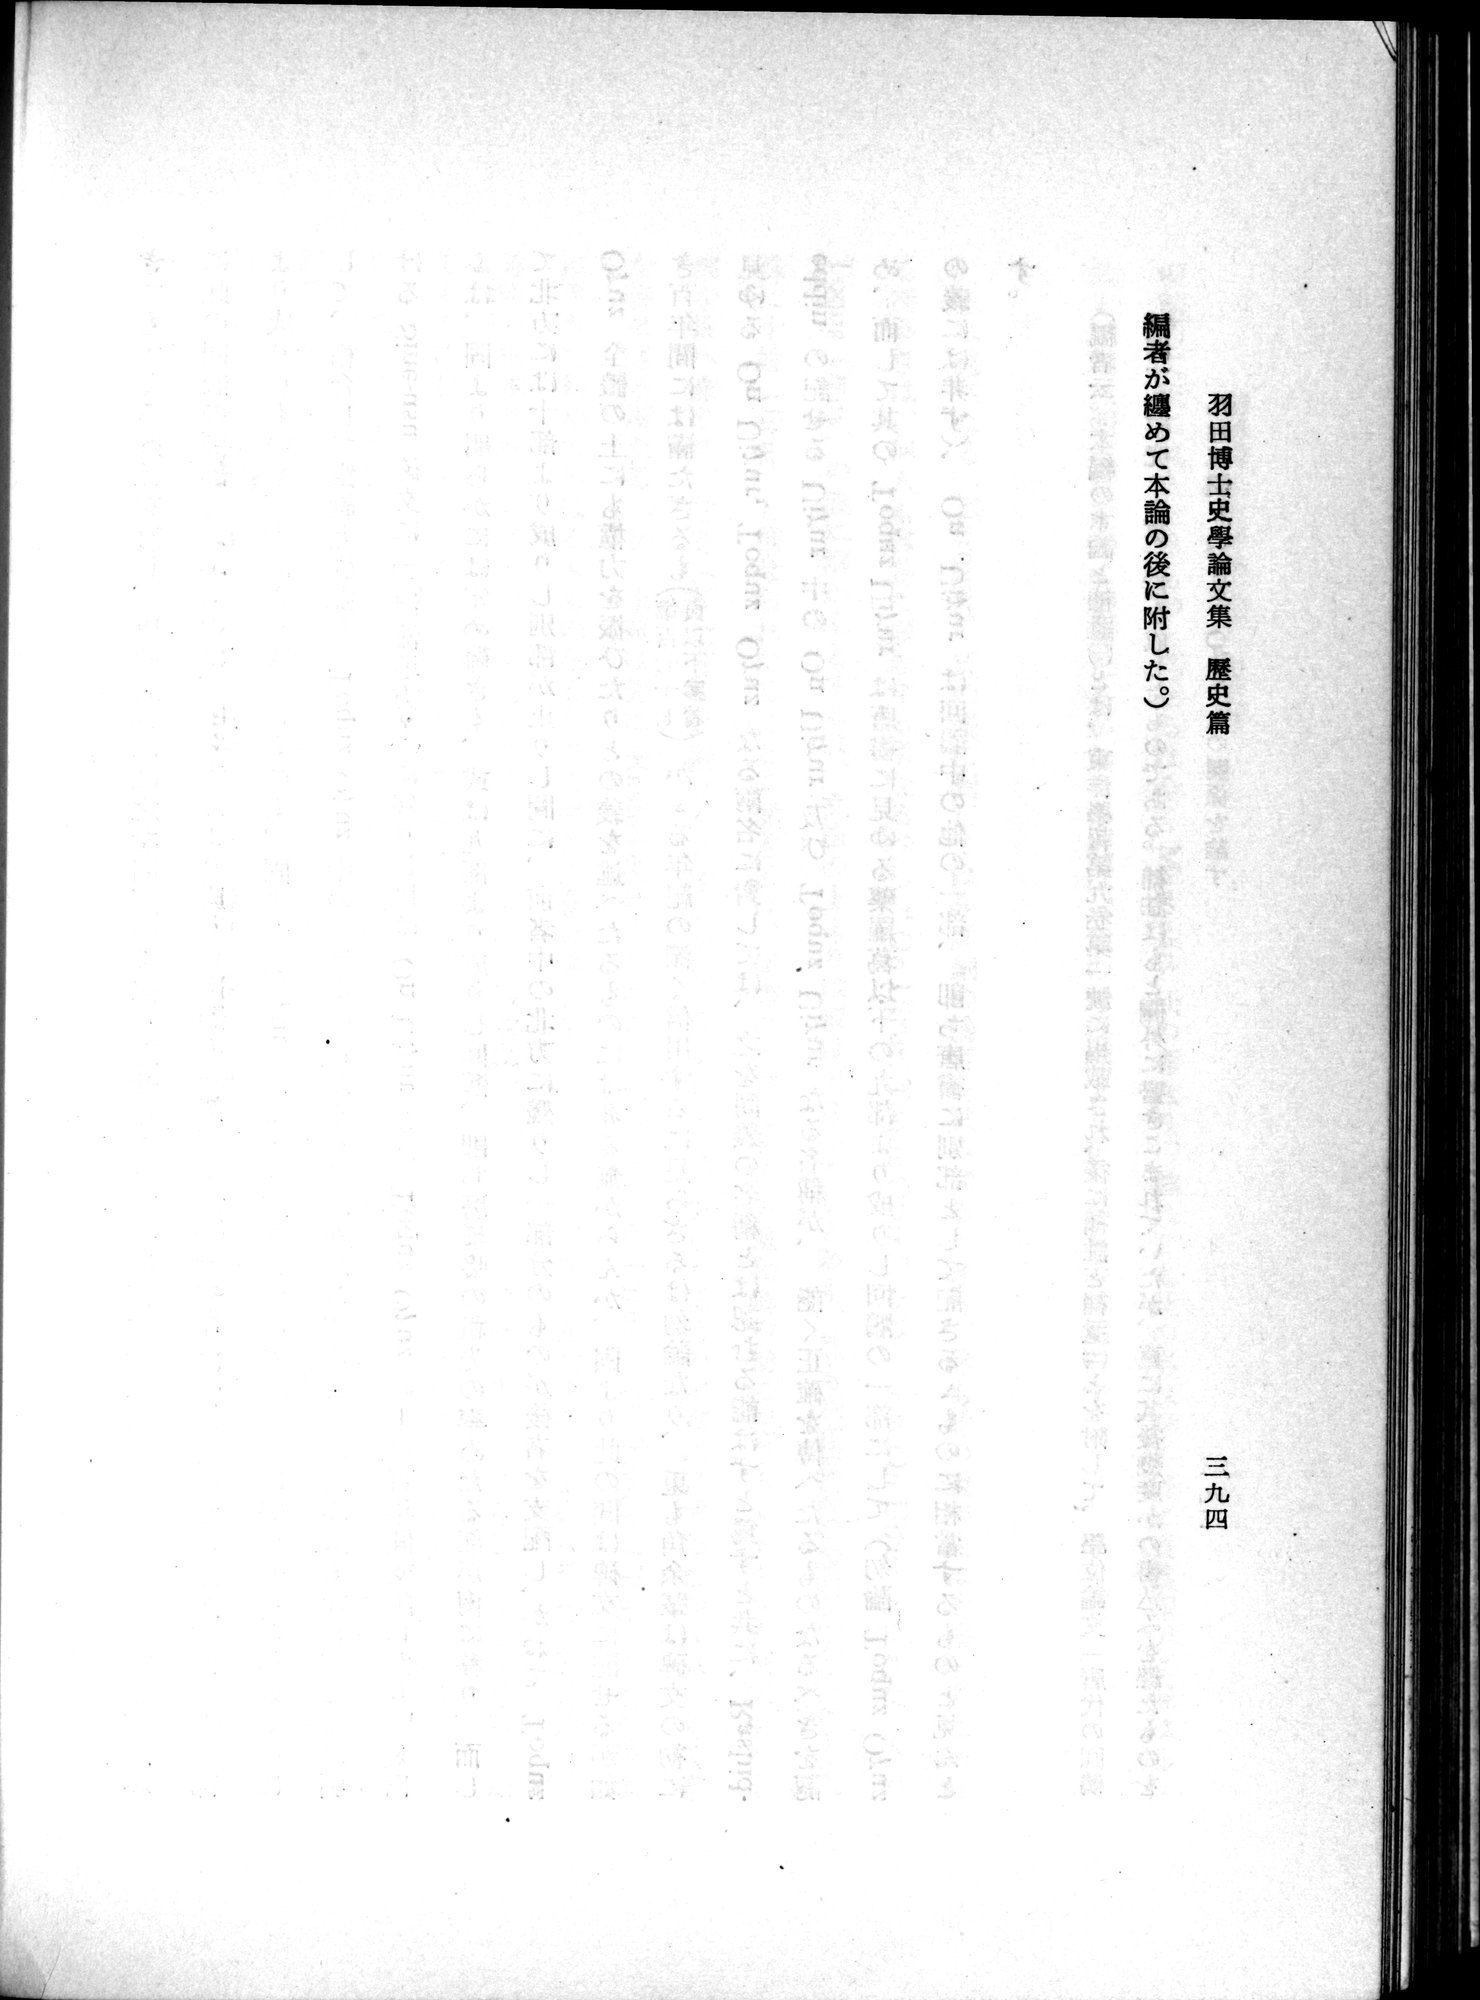 羽田博士史学論文集 : vol.1 / Page 432 (Grayscale High Resolution Image)